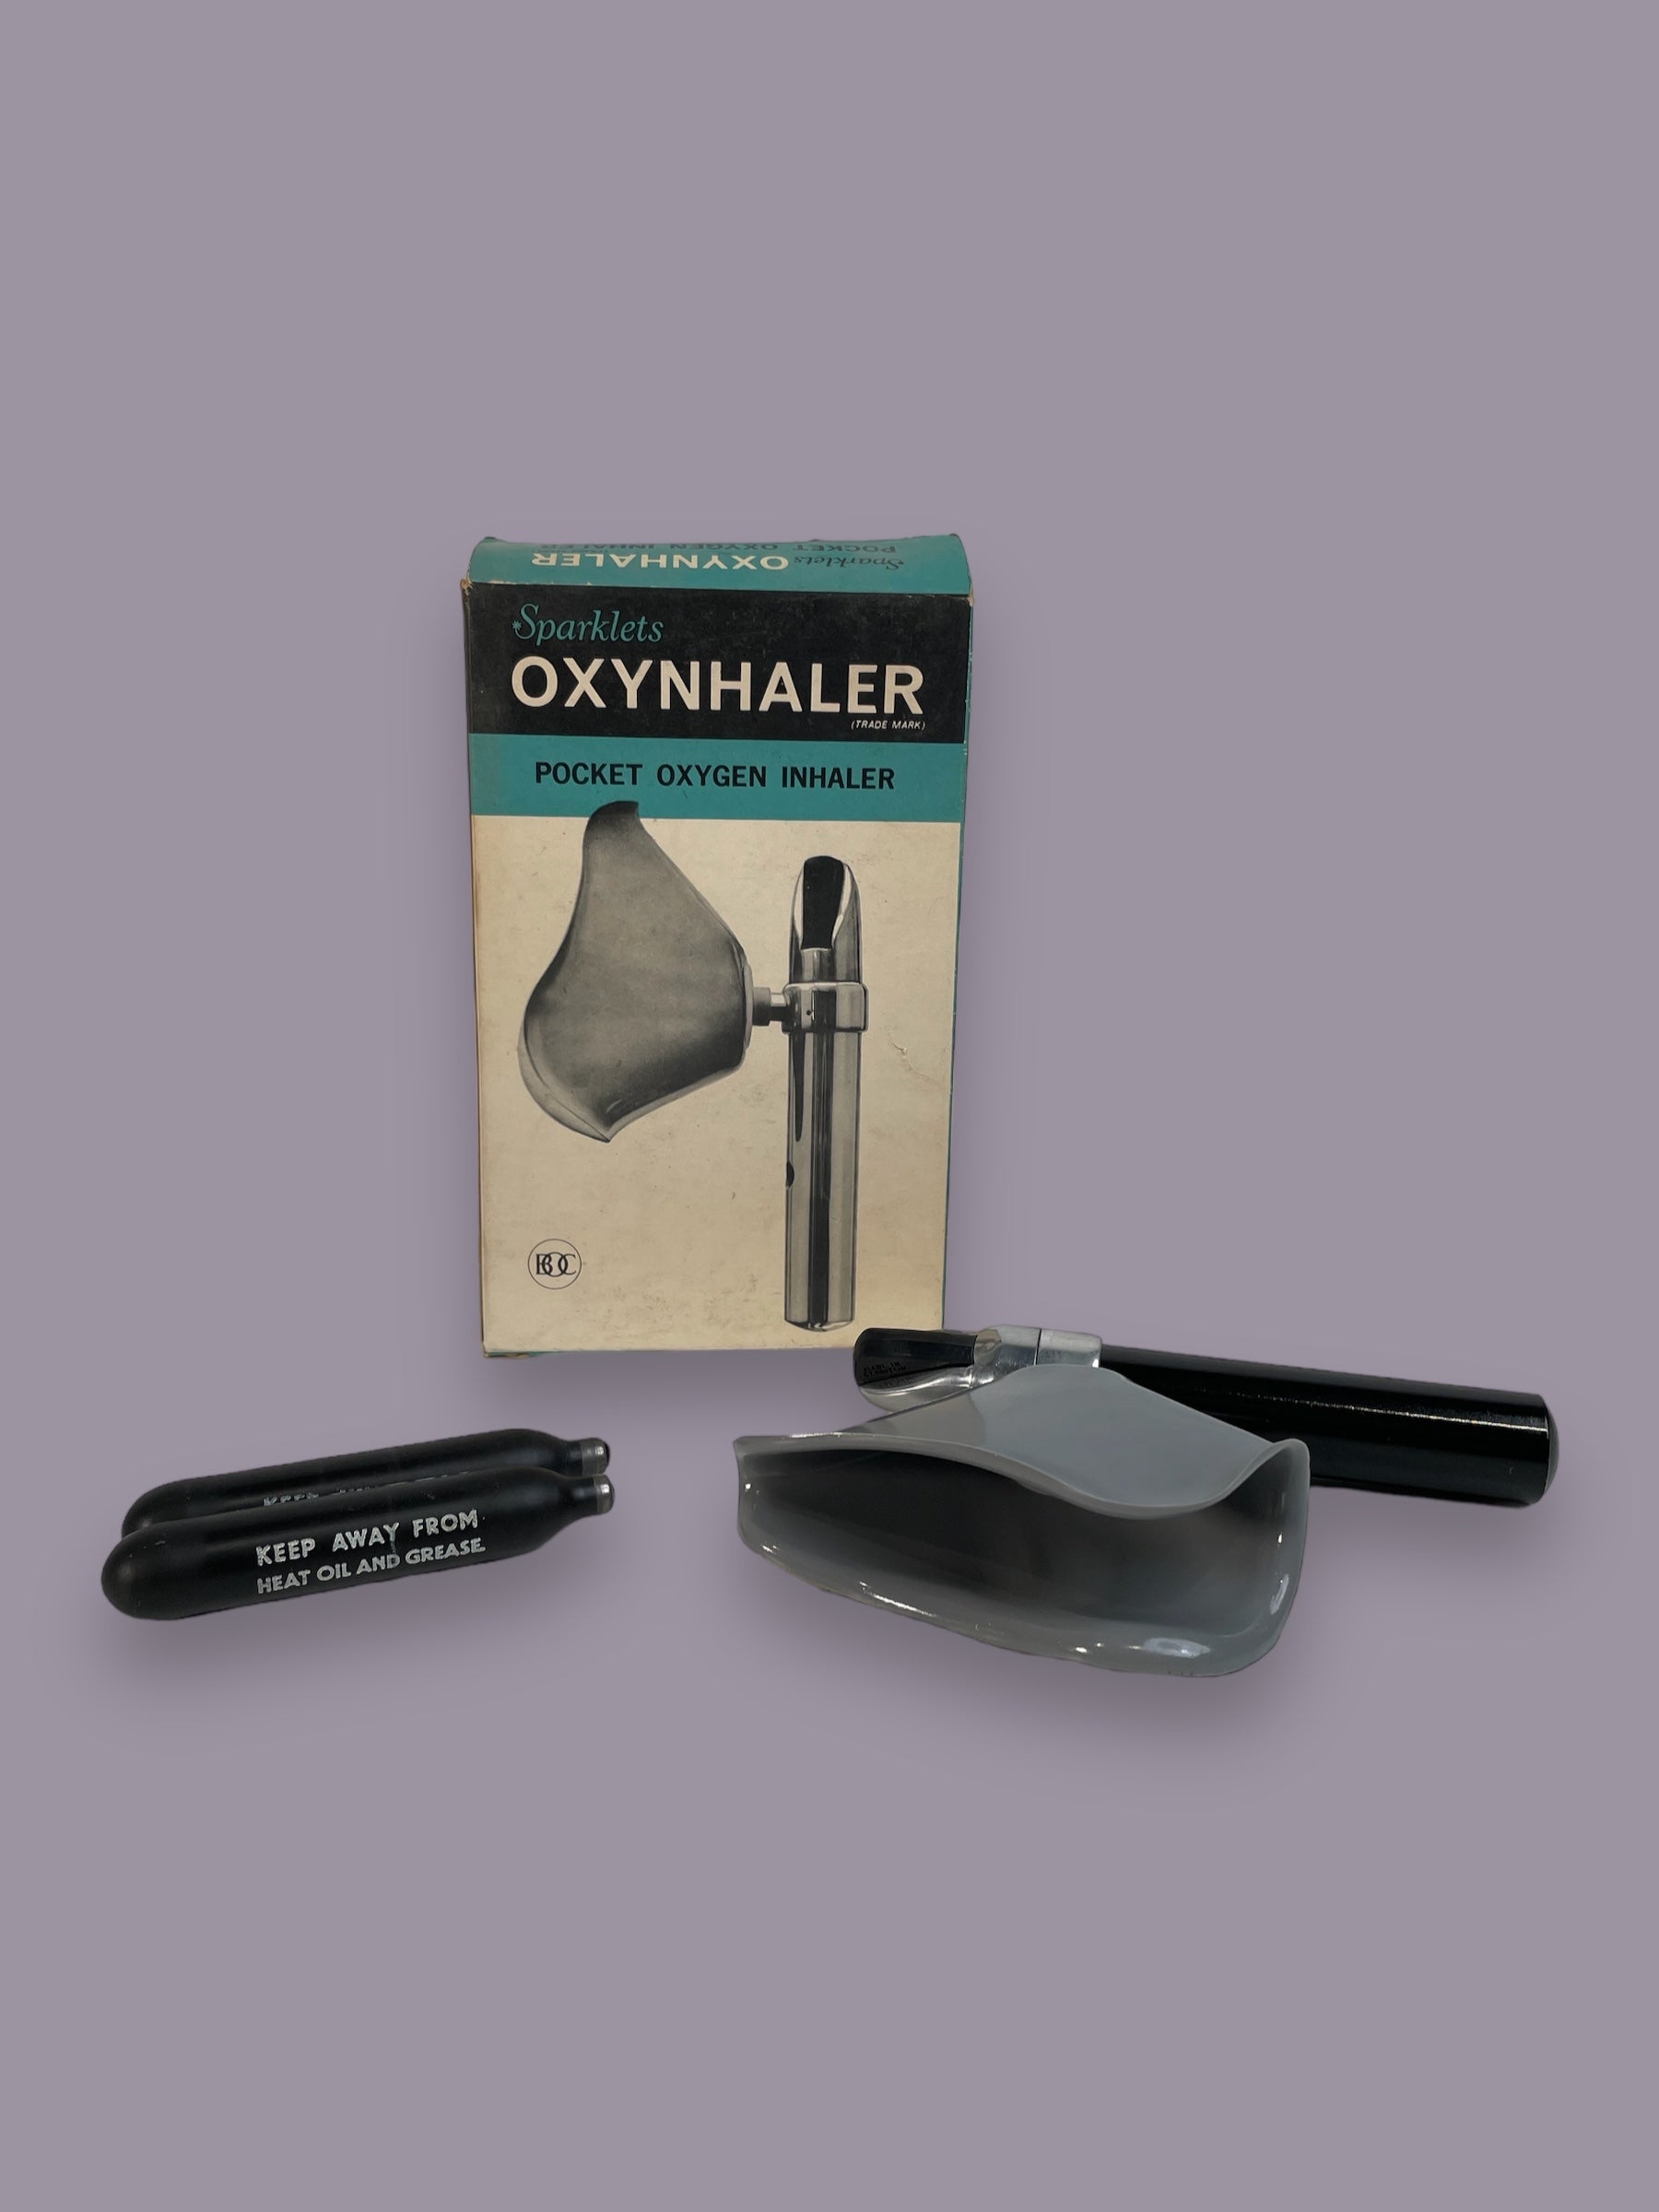 Vintage Sparklets Oxynhaler Pocket Oxygen Inhaler